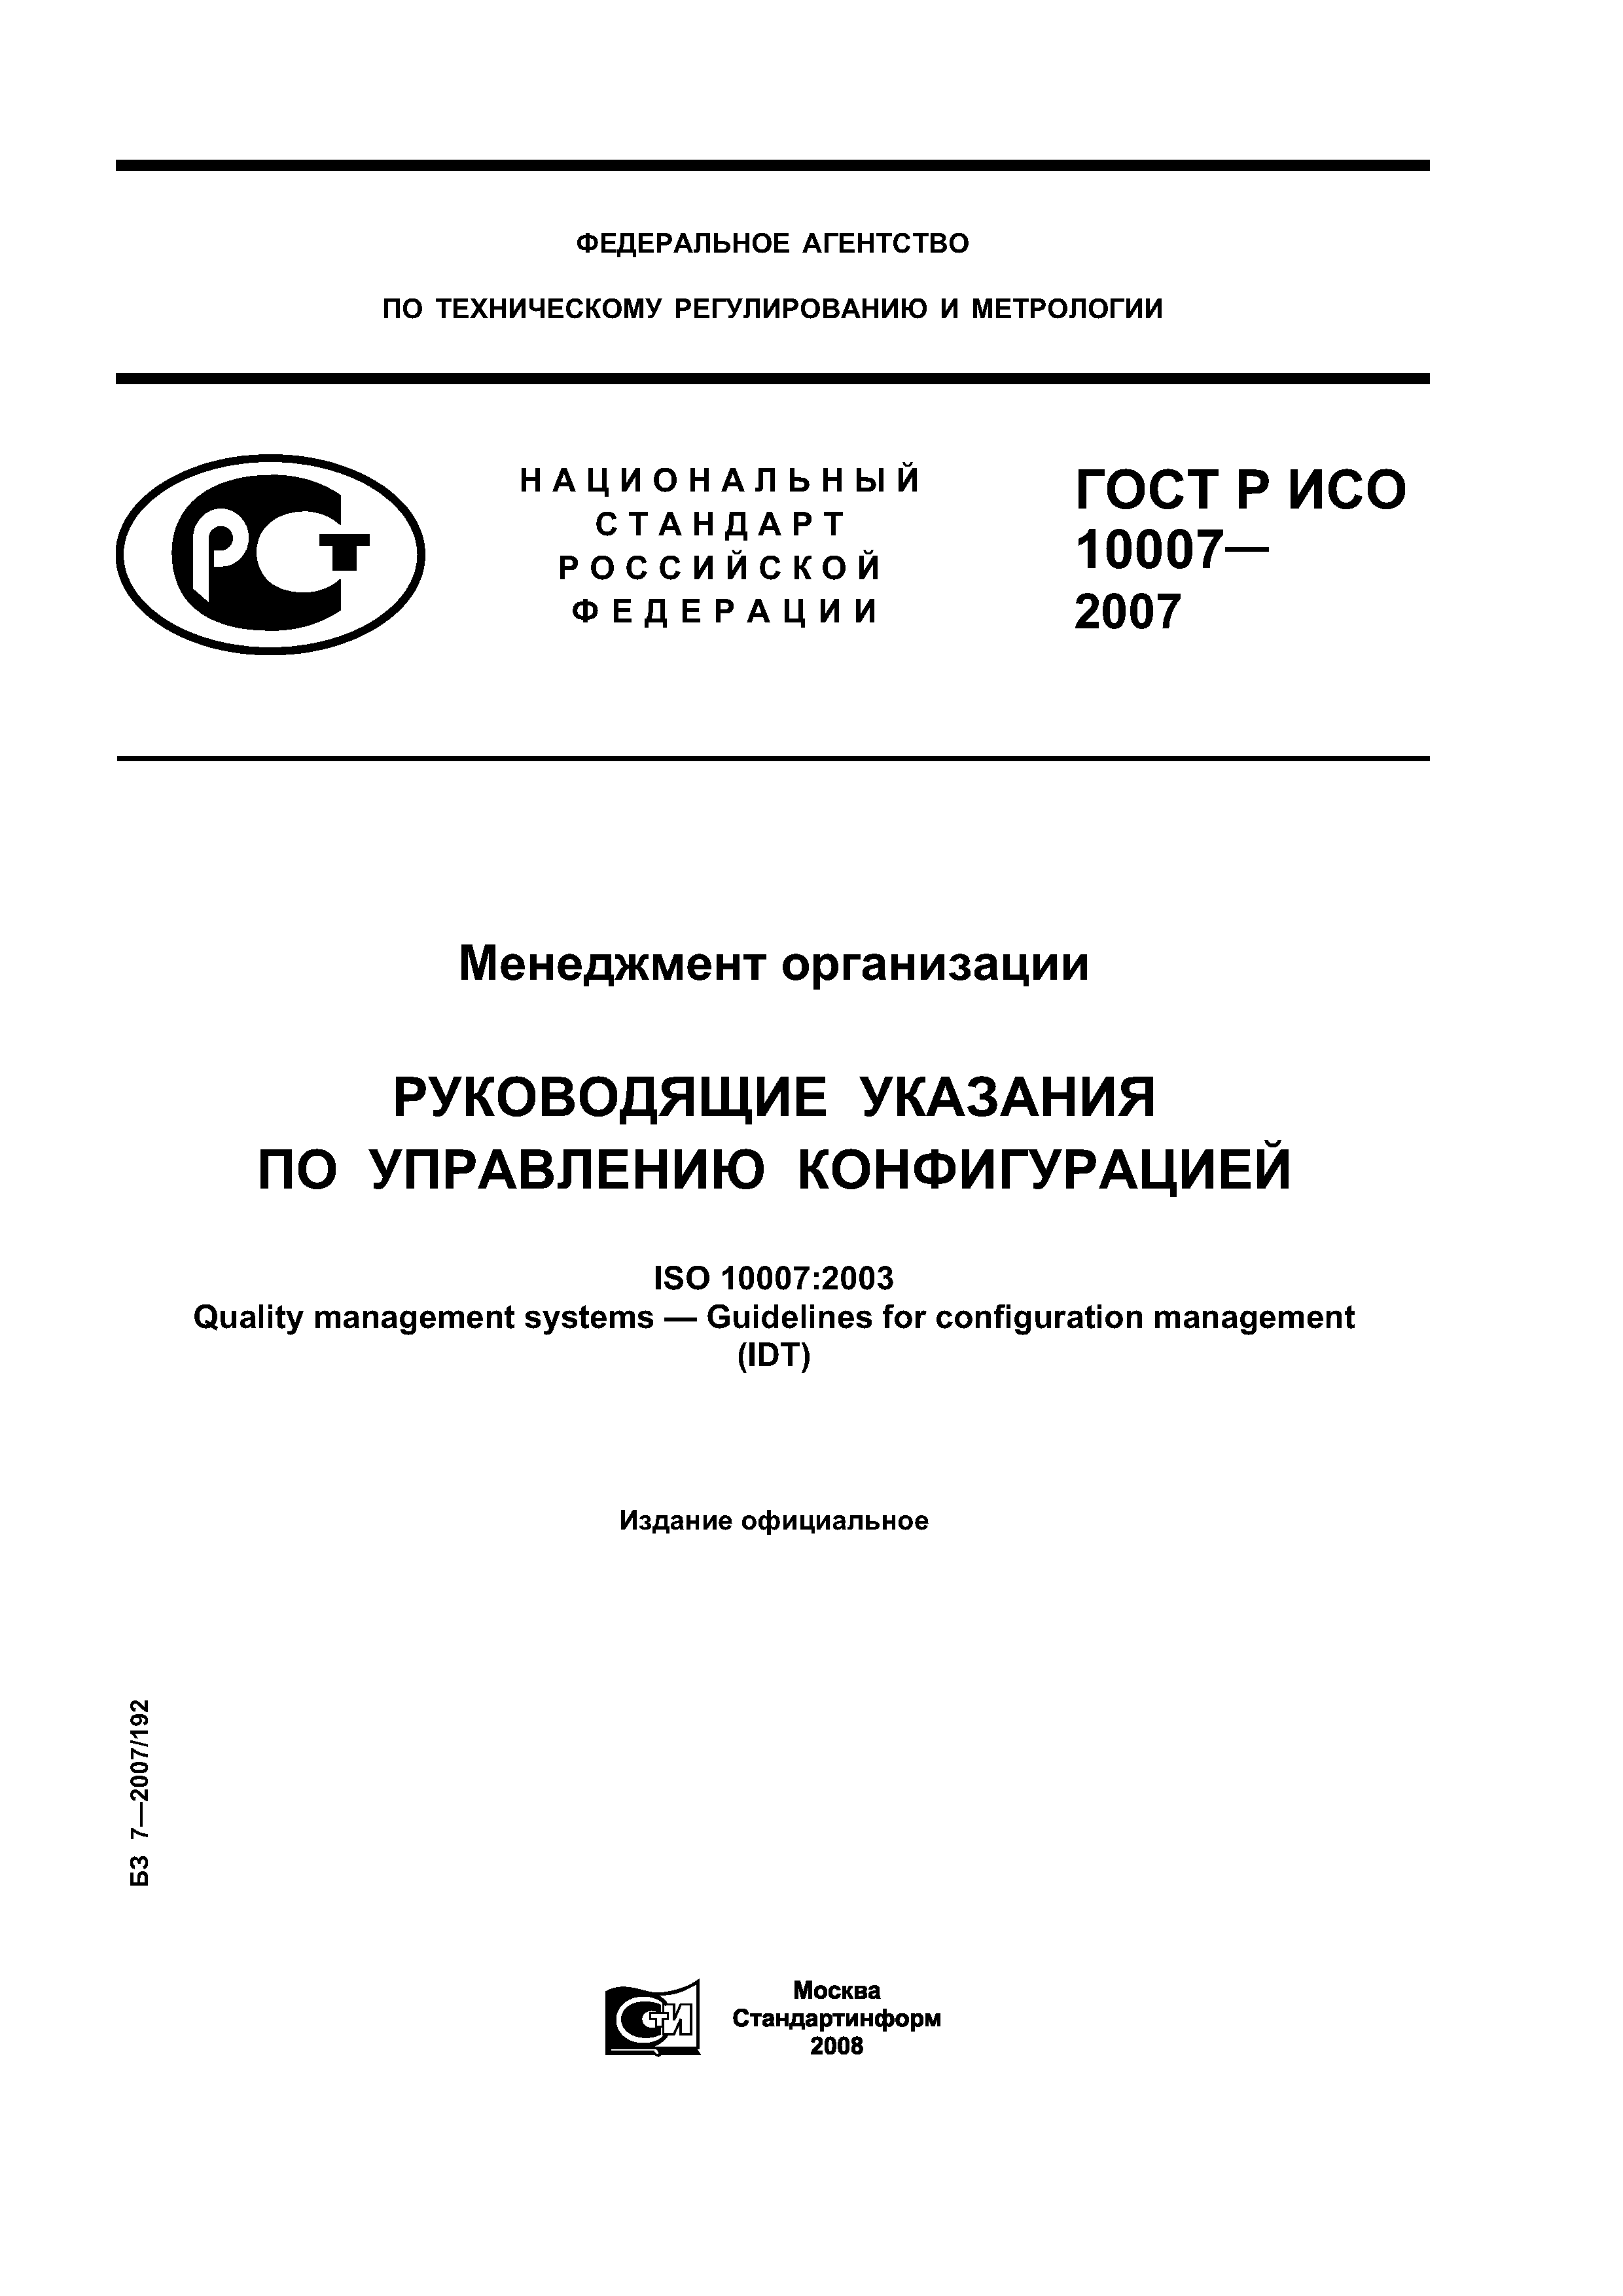 ГОСТ Р ИСО 10007-2007